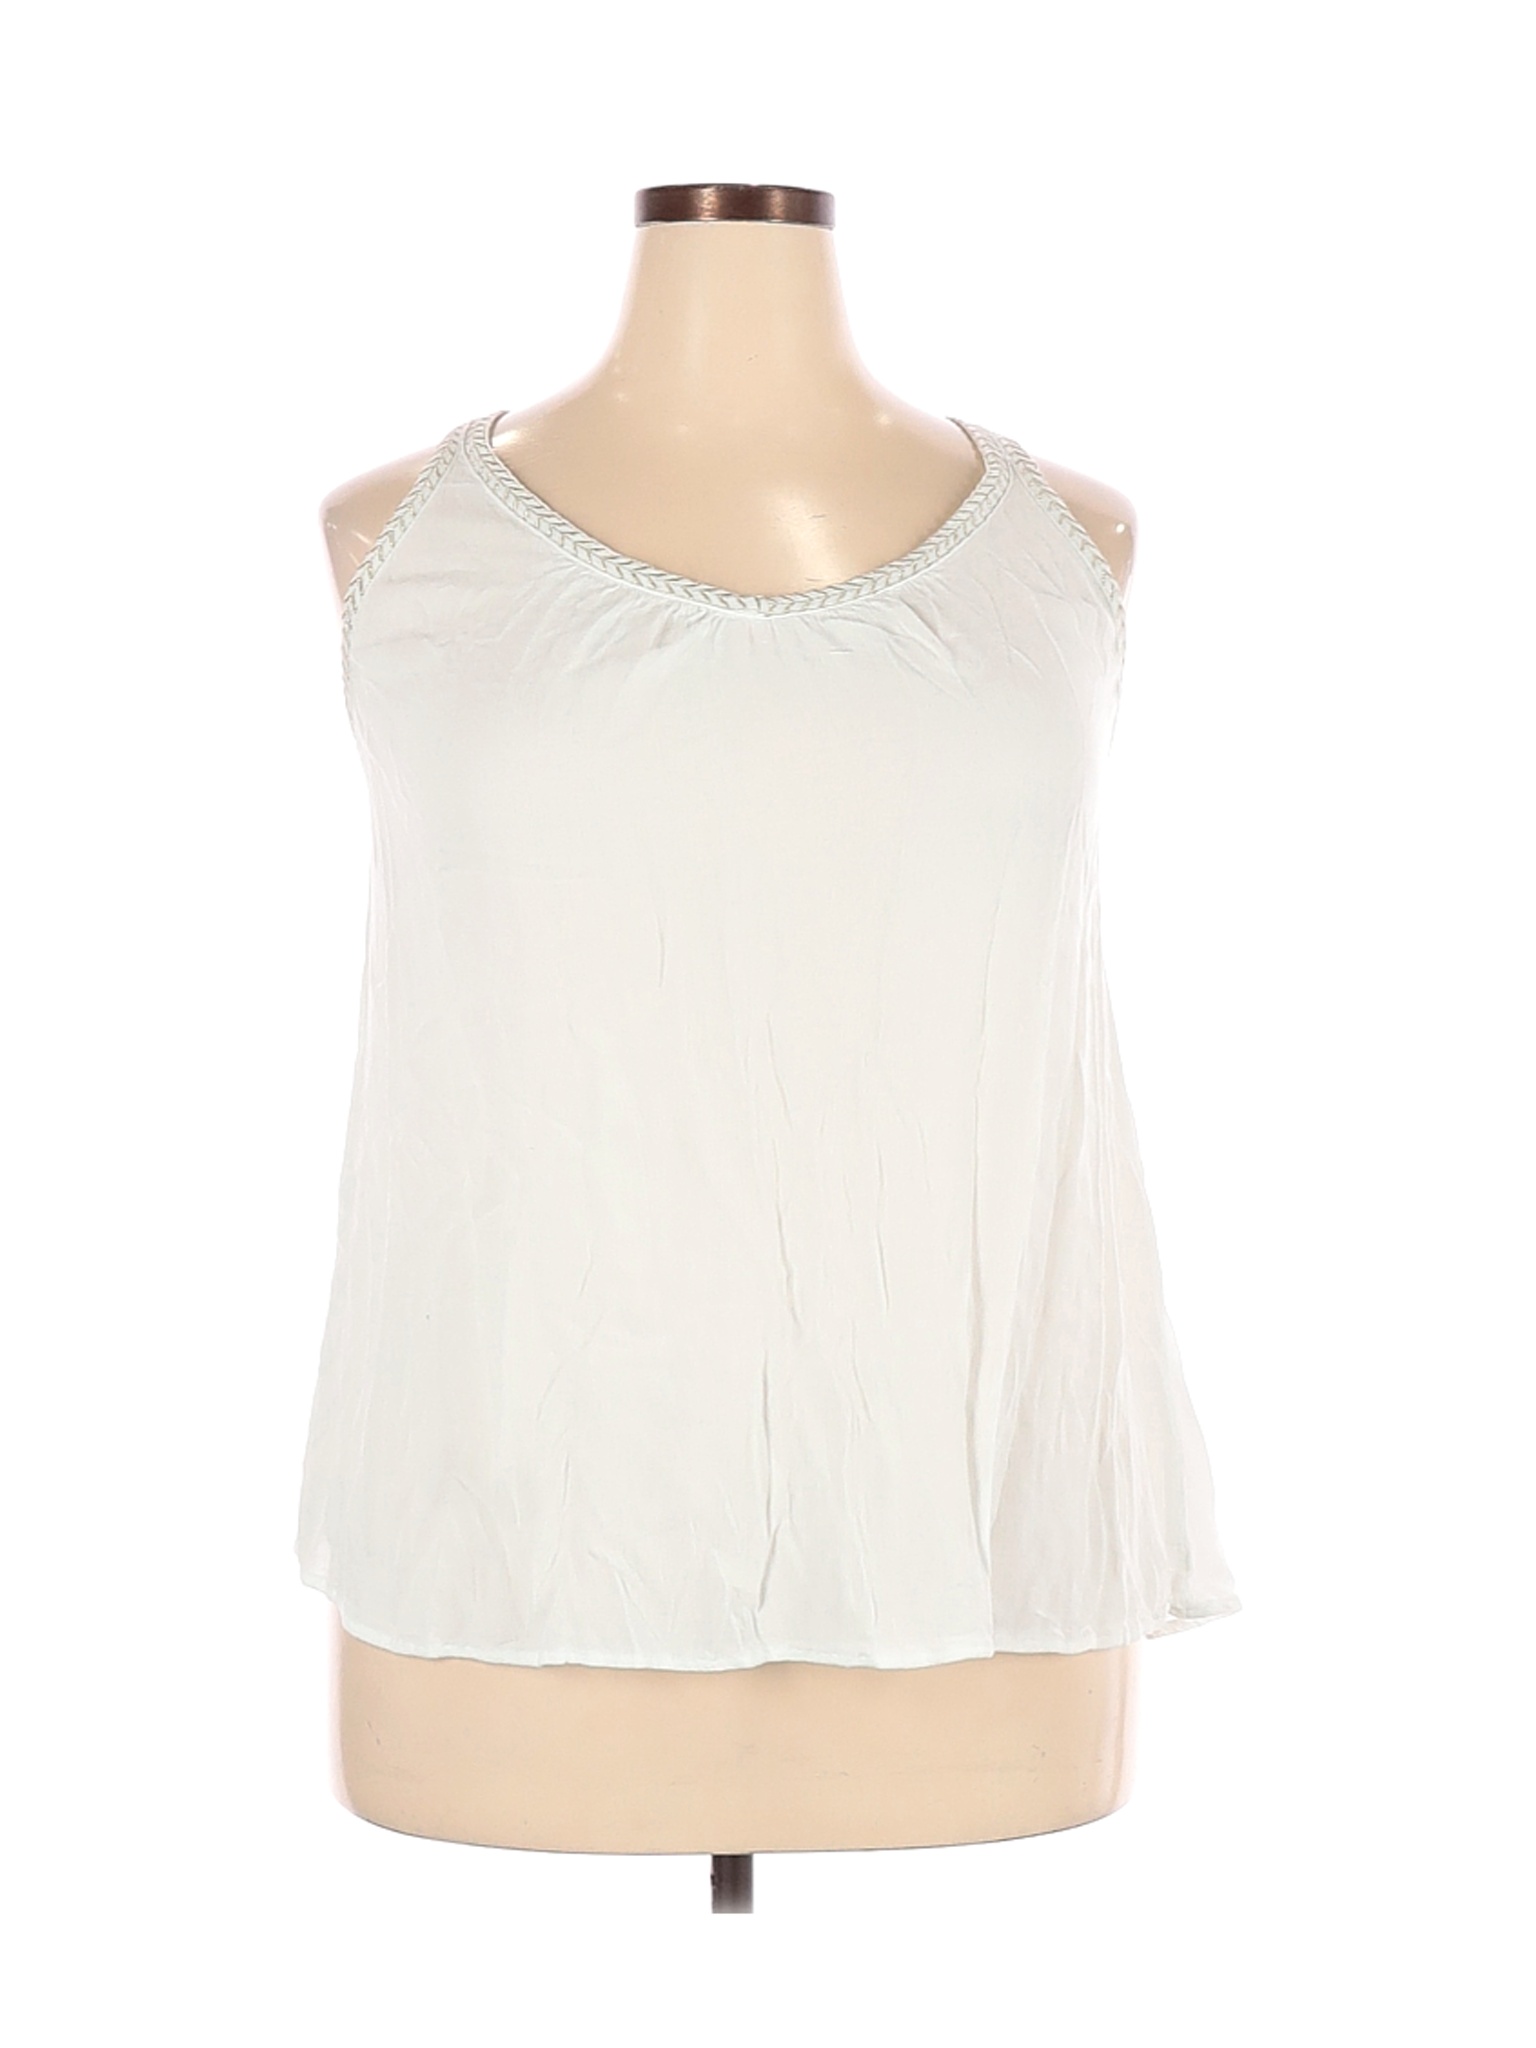 Torrid Women White Sleeveless Blouse 2X Plus | eBay